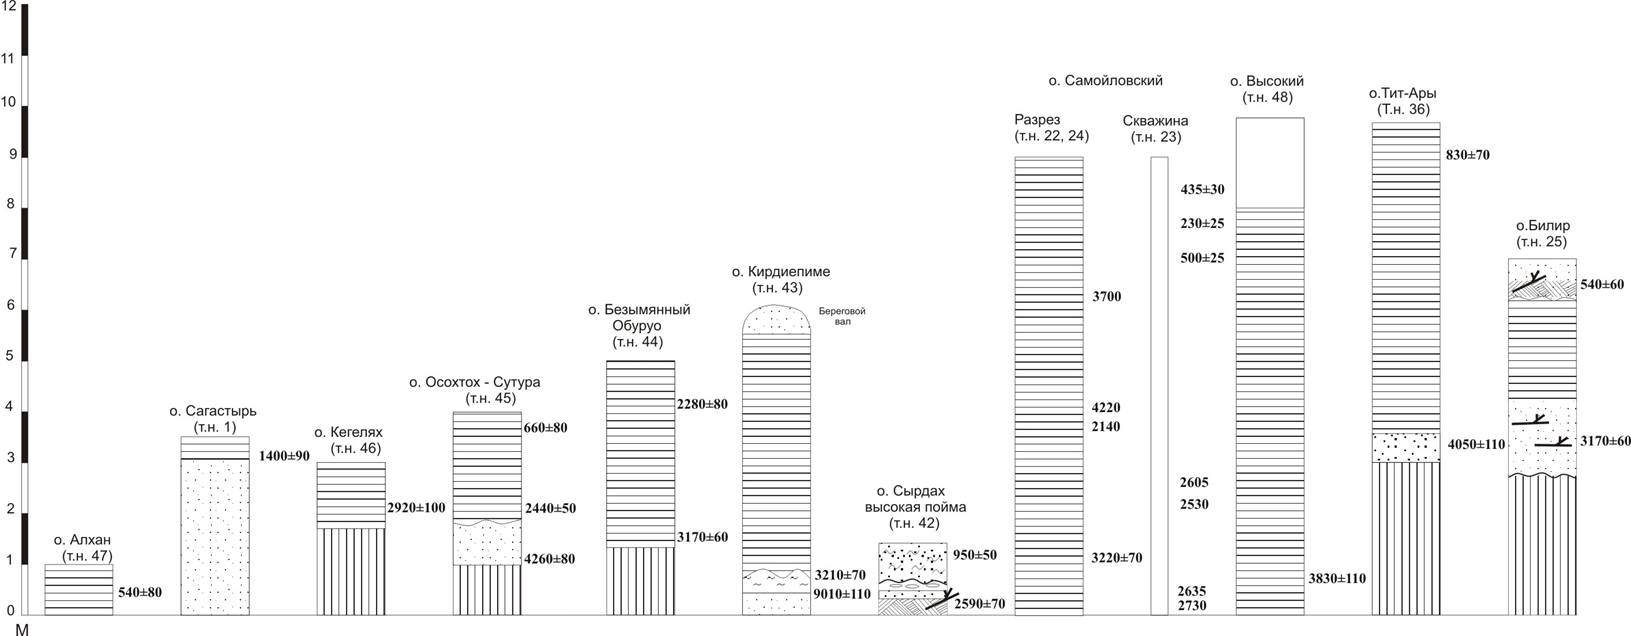 Схема разрезов отложений первой террасы вдоль проток Большая Туматская и Осохтох